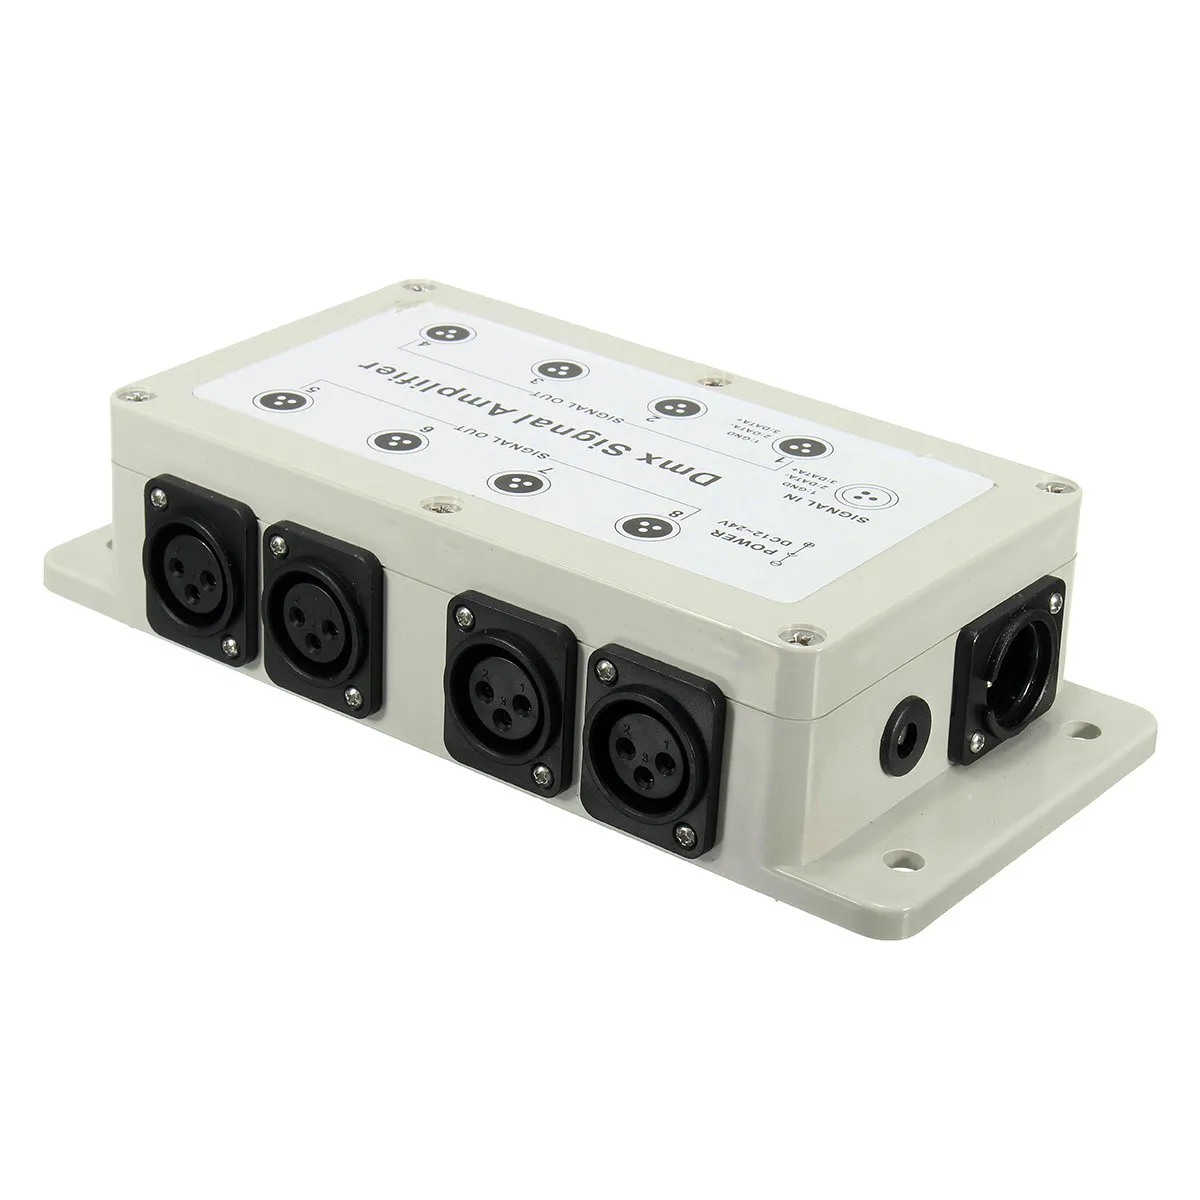 DC12-24V 8-канальный сетевой видеорегистратор Выход DMX DMX512 светодиодный контроллер разделитель усилителя сигнала компонентов для дома оборудования